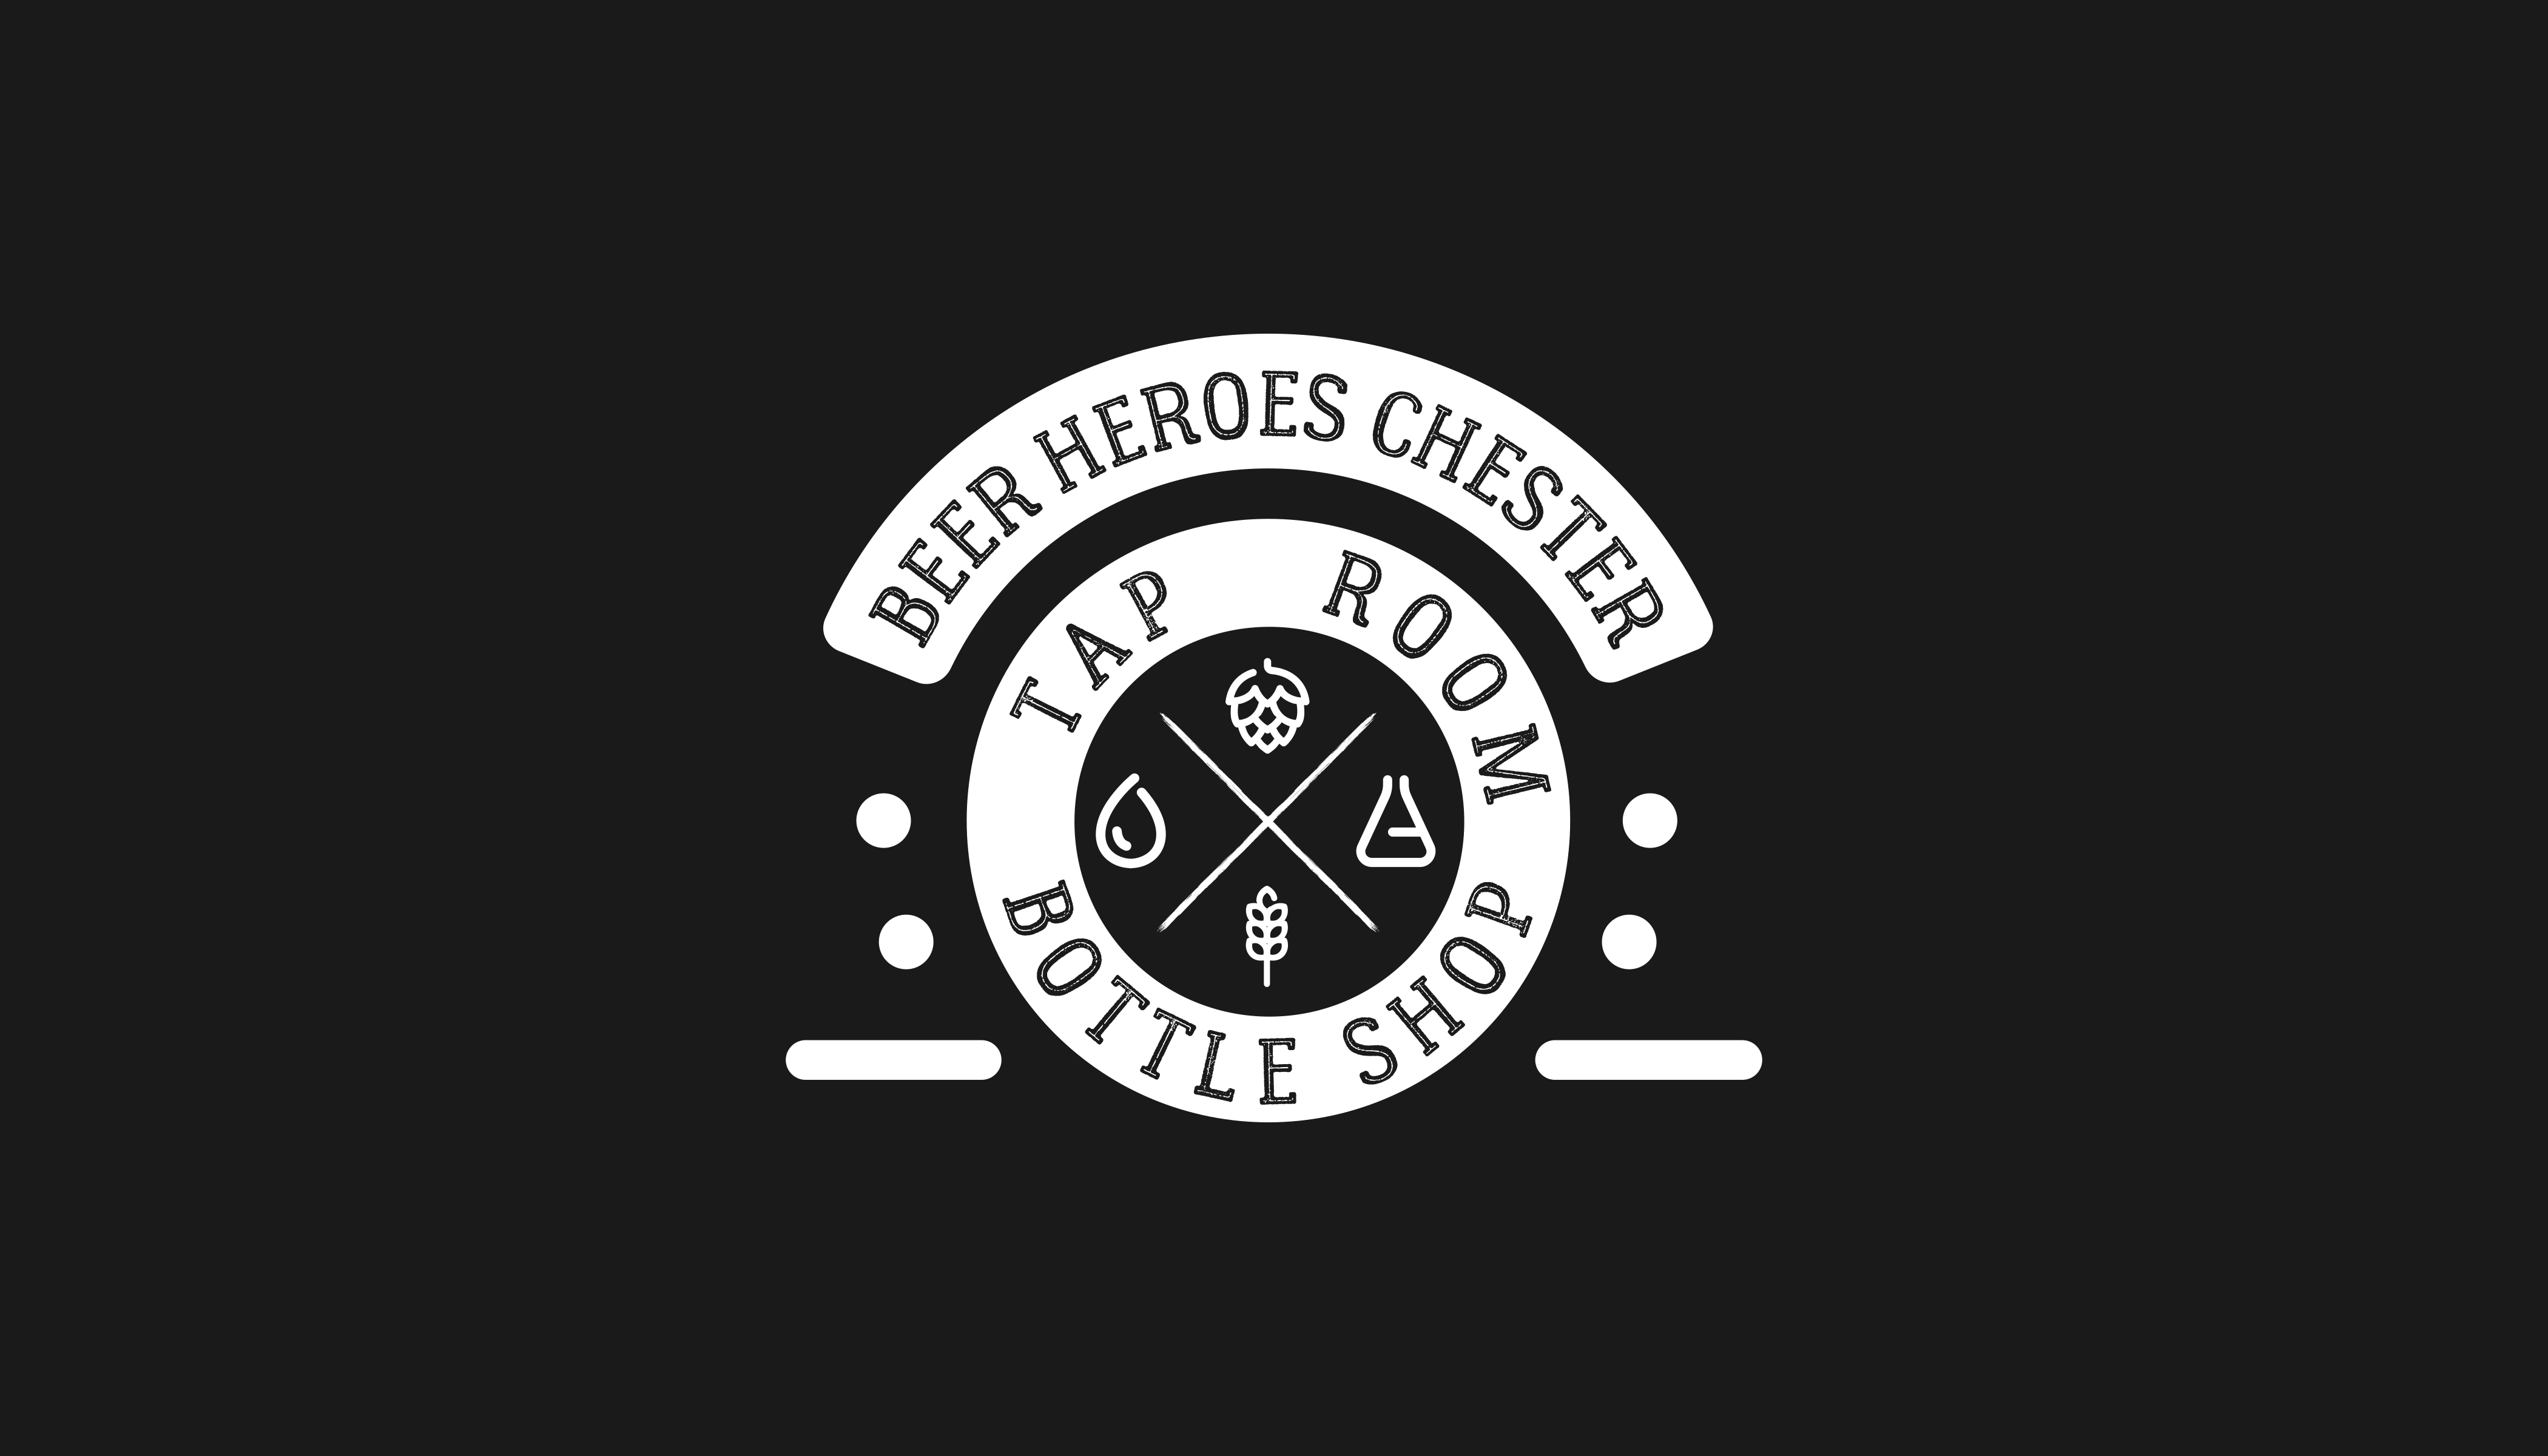 BEER HEROES